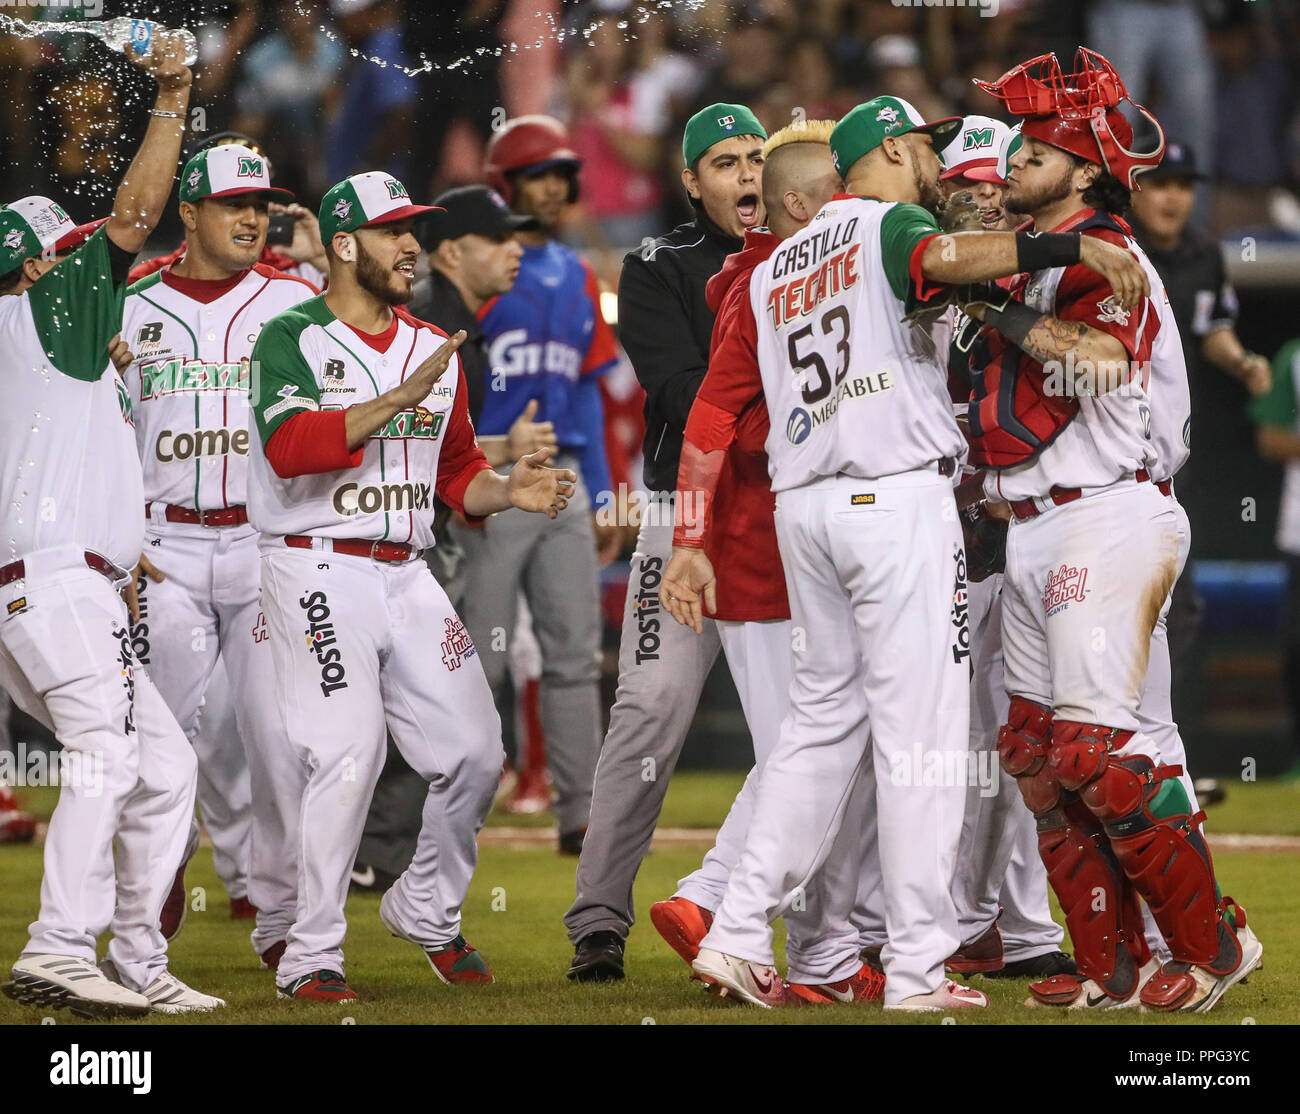 Con un ponche del relevista Jake Sanchez, Mexico gana 1 carrera por cero a  Cuba 9 innings, con este resultado el equipo azteca pasa a la final de la S  Stock Photo - Alamy